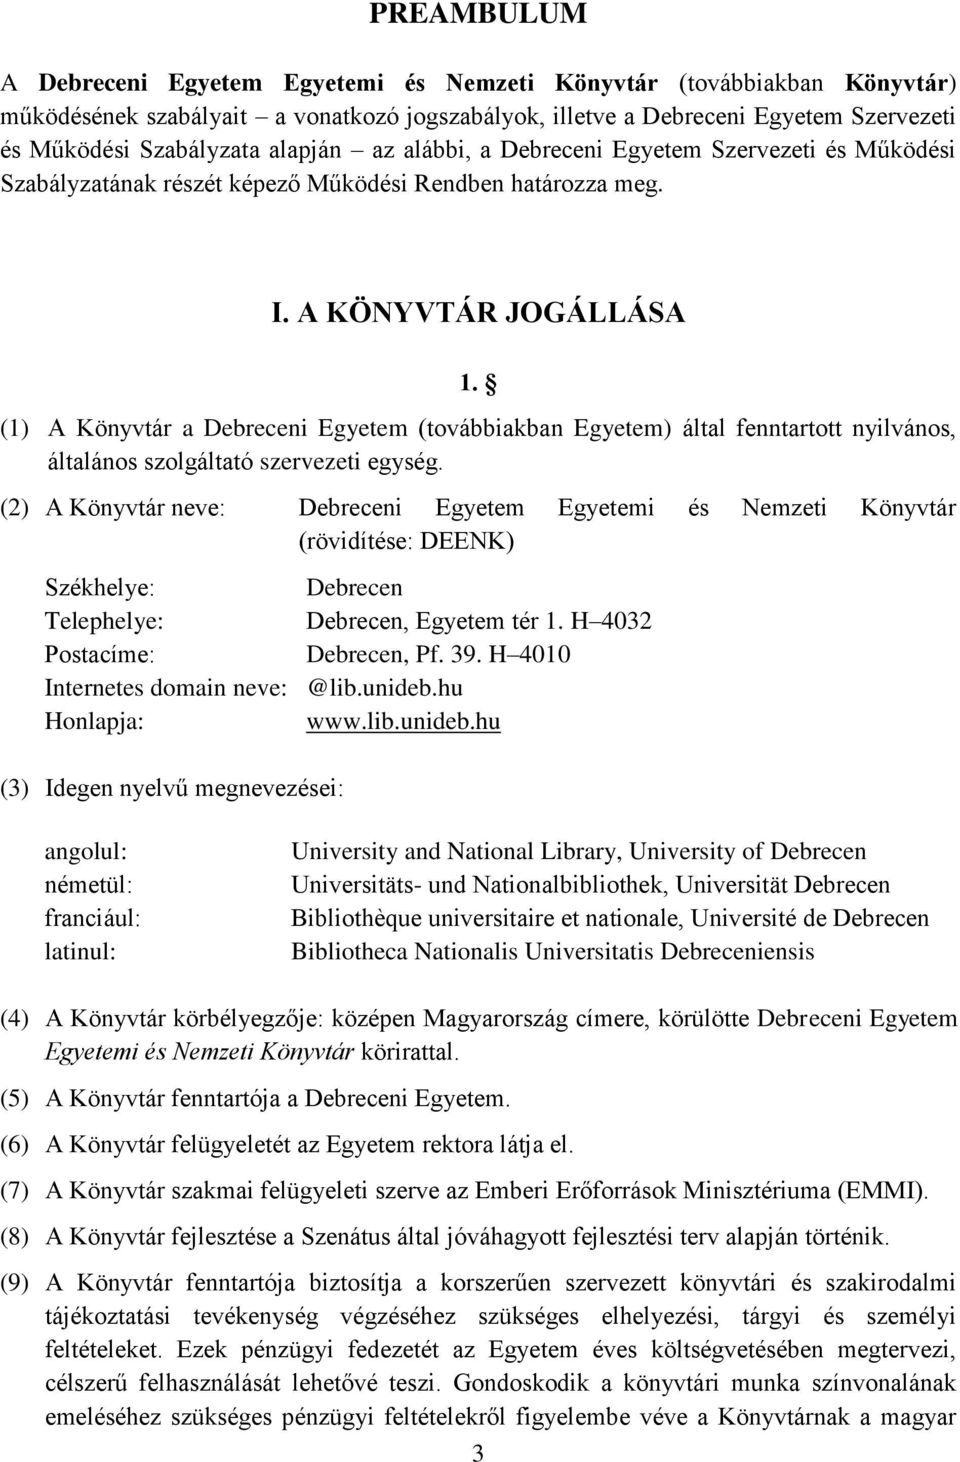 (1) A Könyvtár a Debreceni Egyetem (továbbiakban Egyetem) által fenntartott nyilvános, általános szolgáltató szervezeti egység.